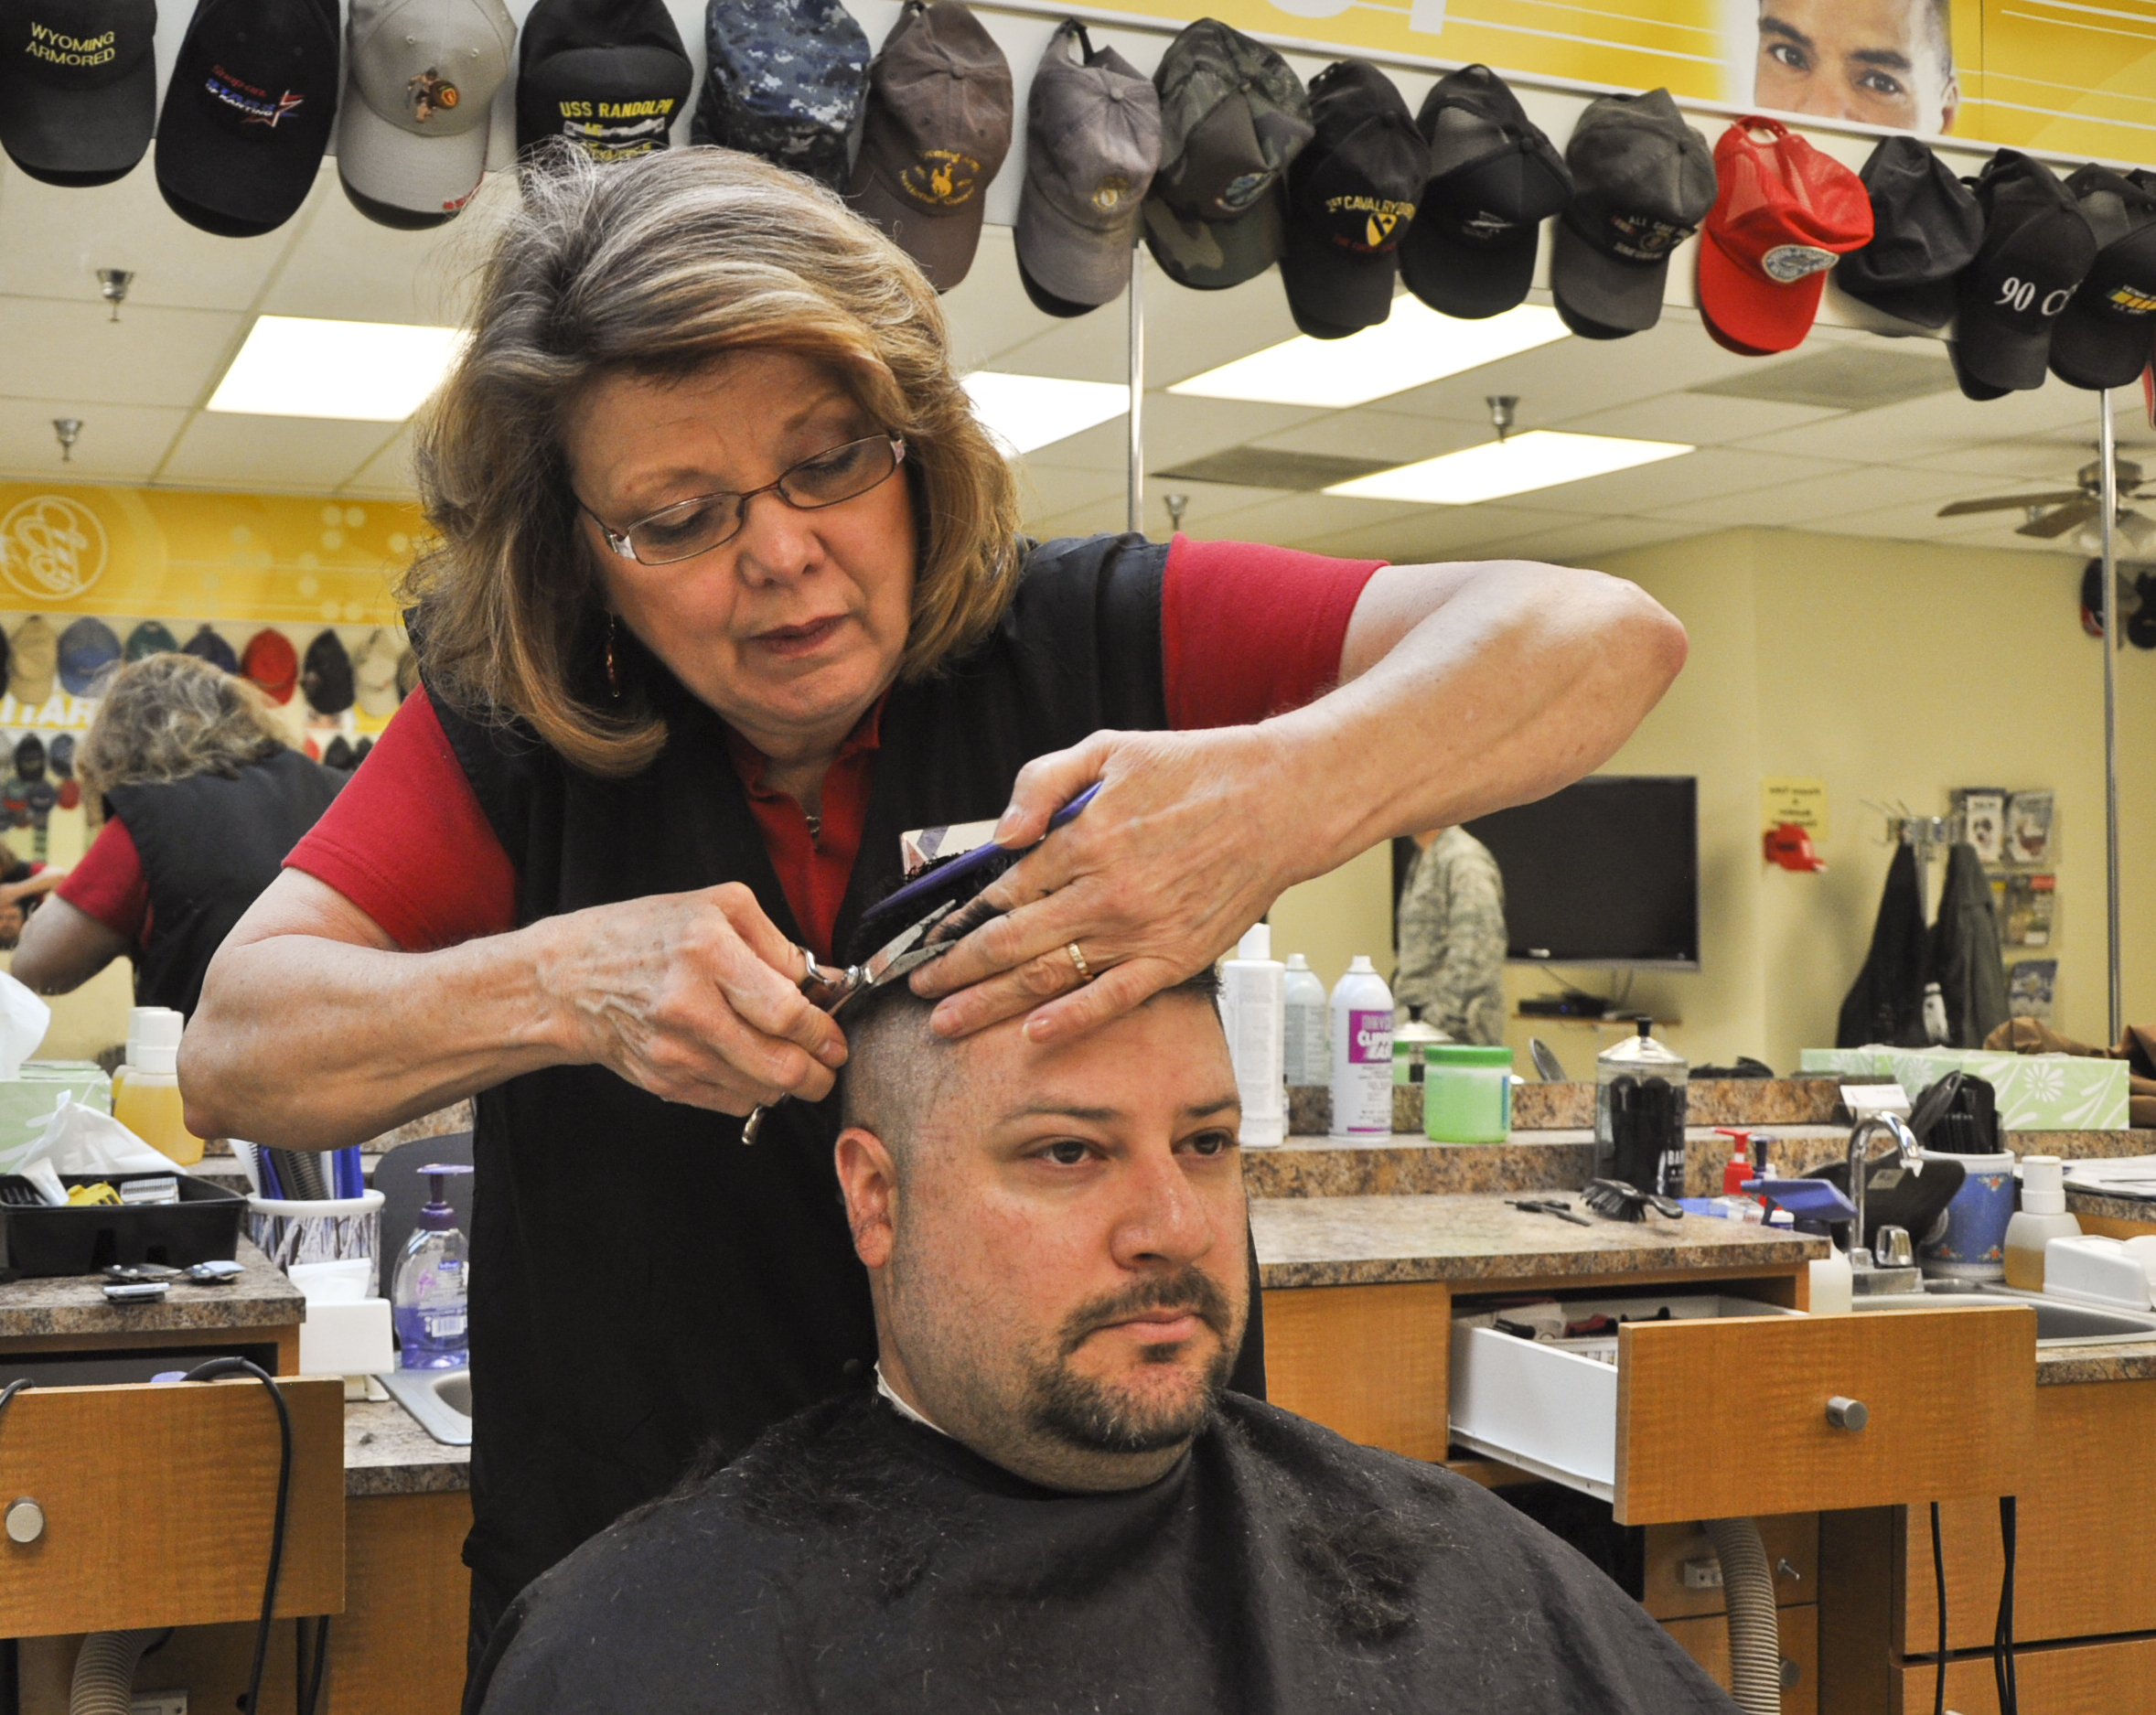 File:Barber makes cut.JPG